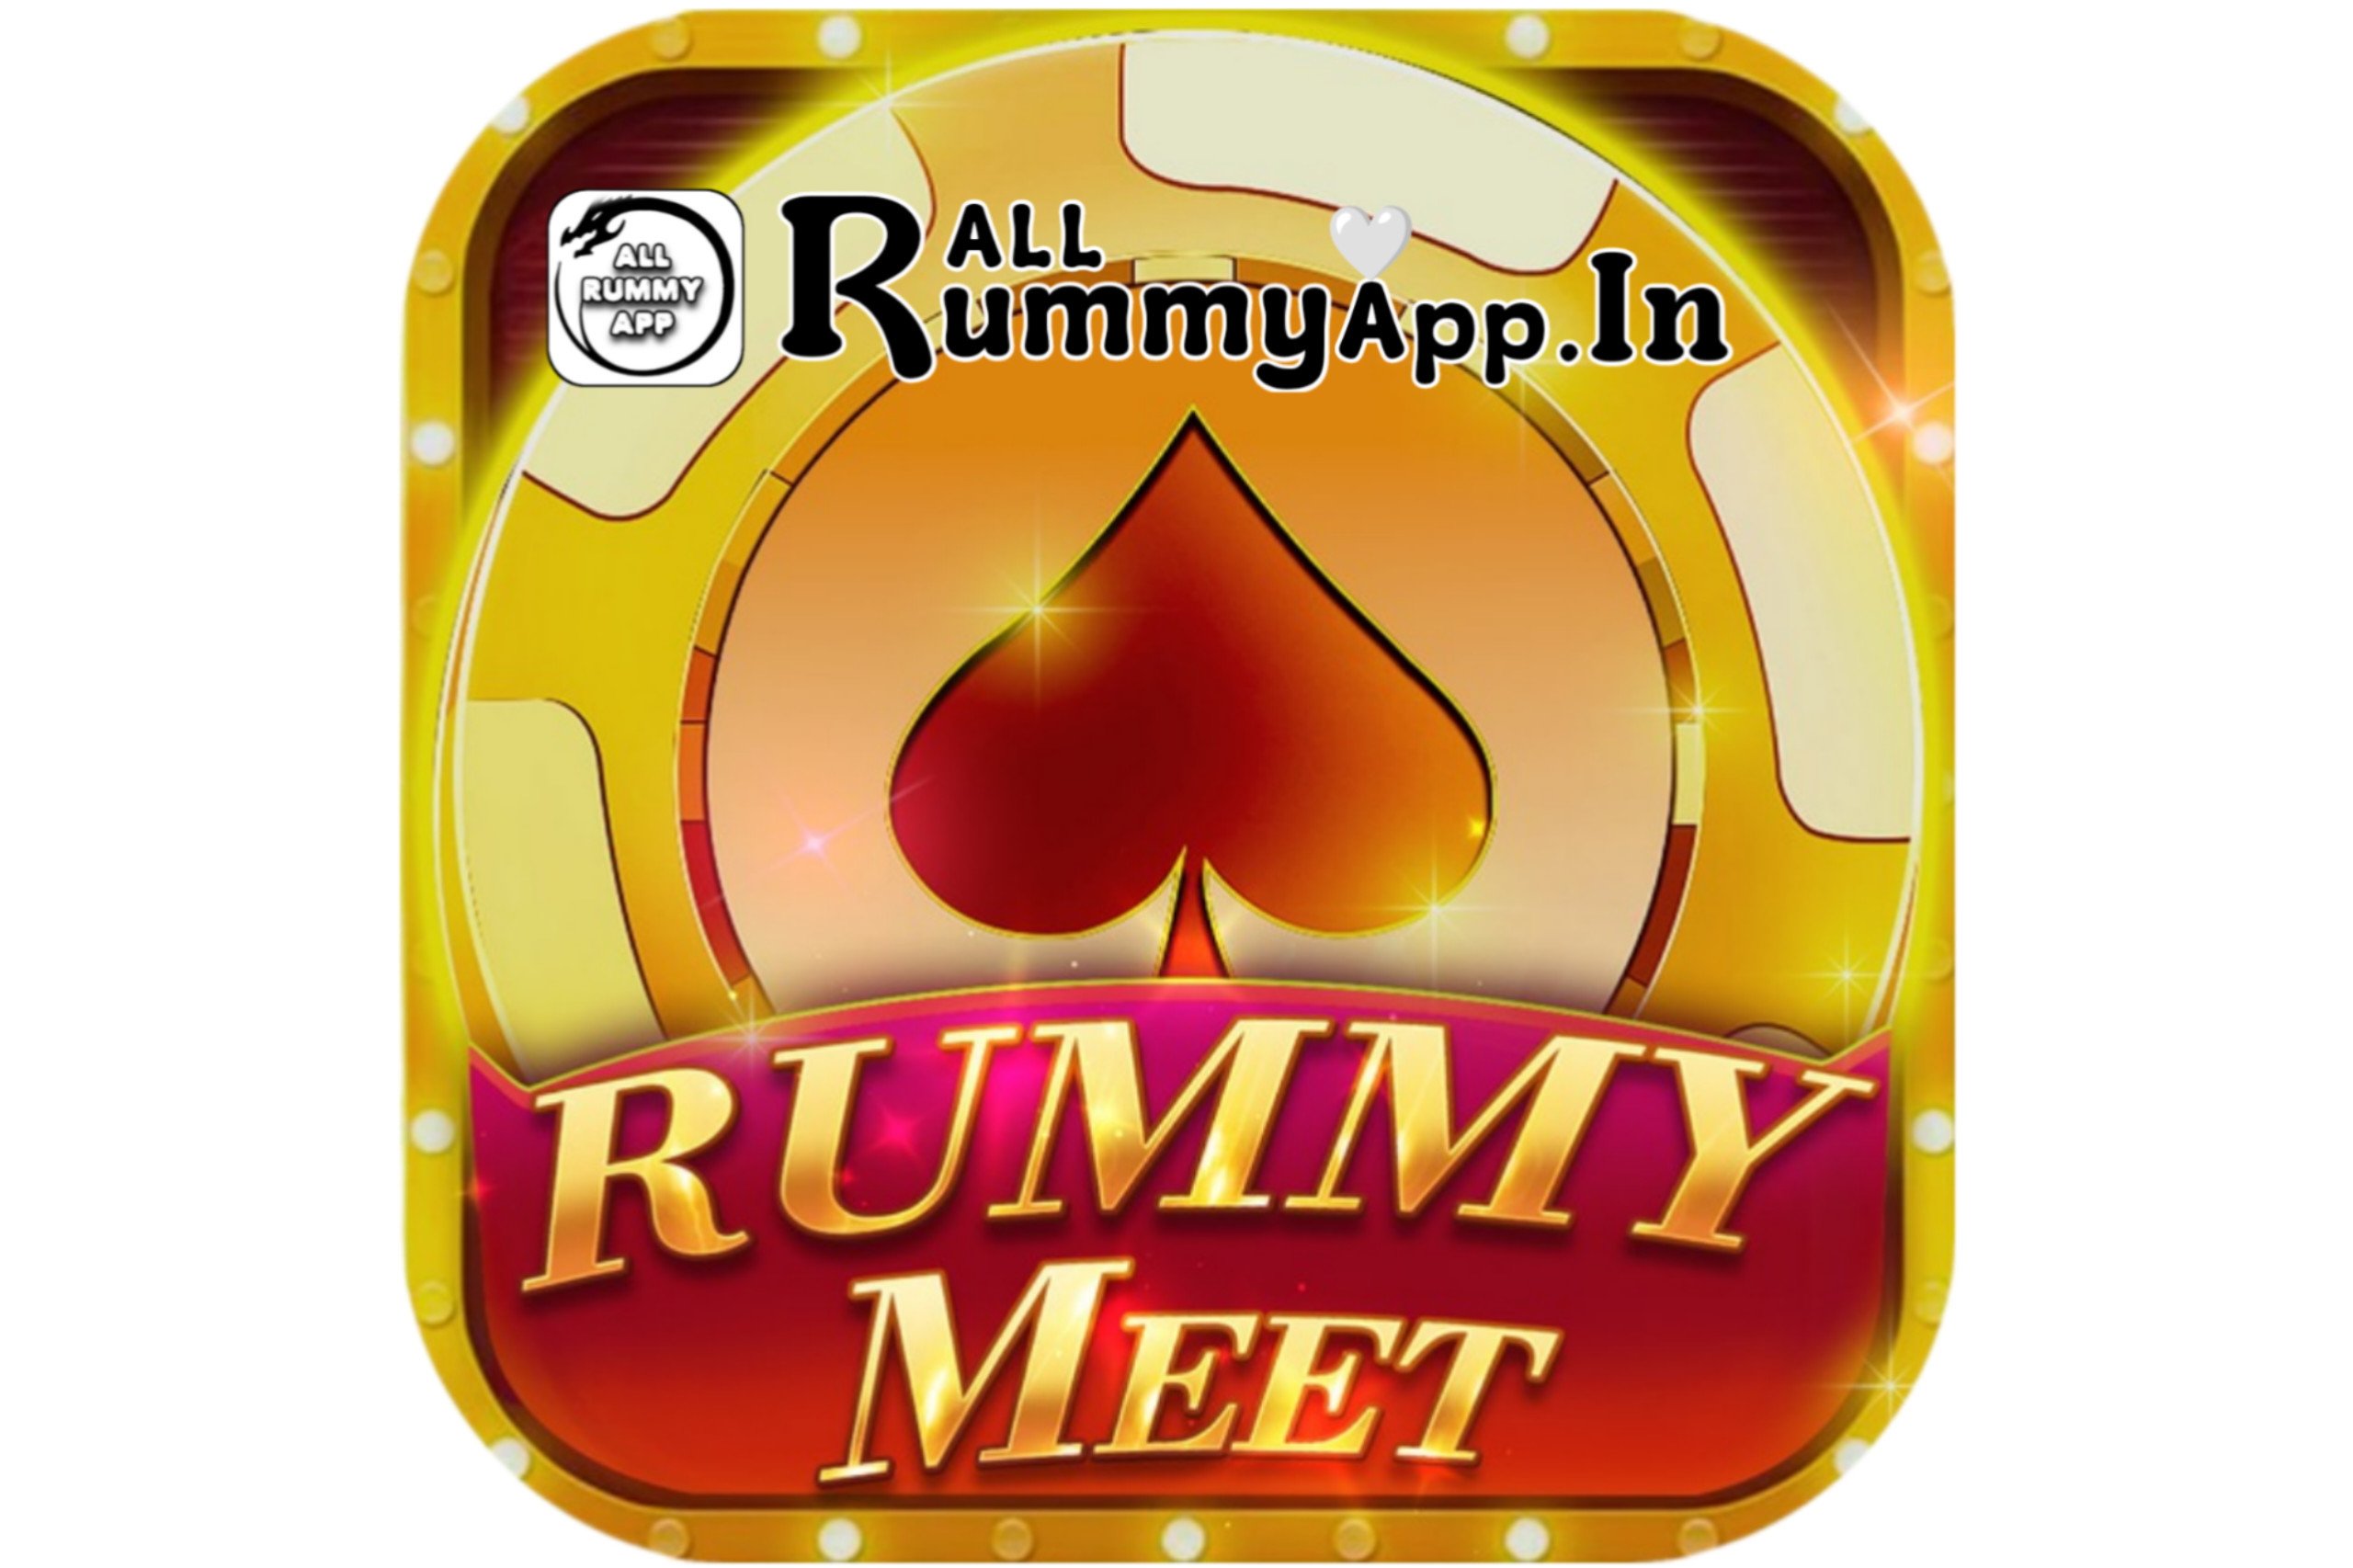 Rummy Meet APK Download